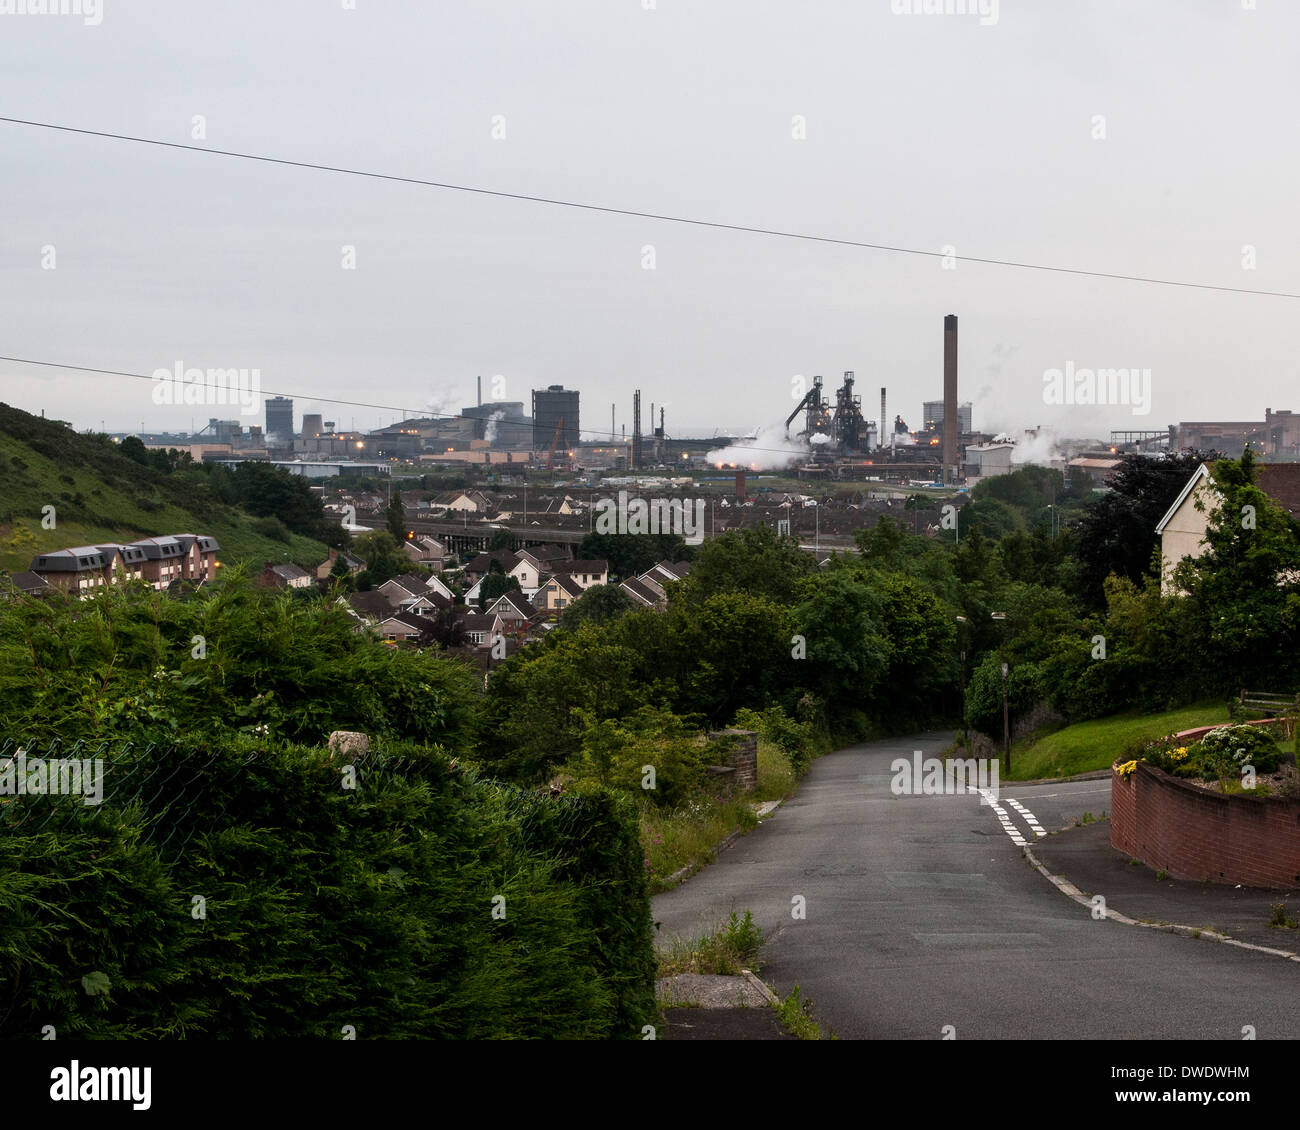 Port Talbot, Port Talbot, Vereinigtes Königreich. Architekt: Verschiedene, 2014. Blick auf Stadt und Stahlwerken. Stockfoto